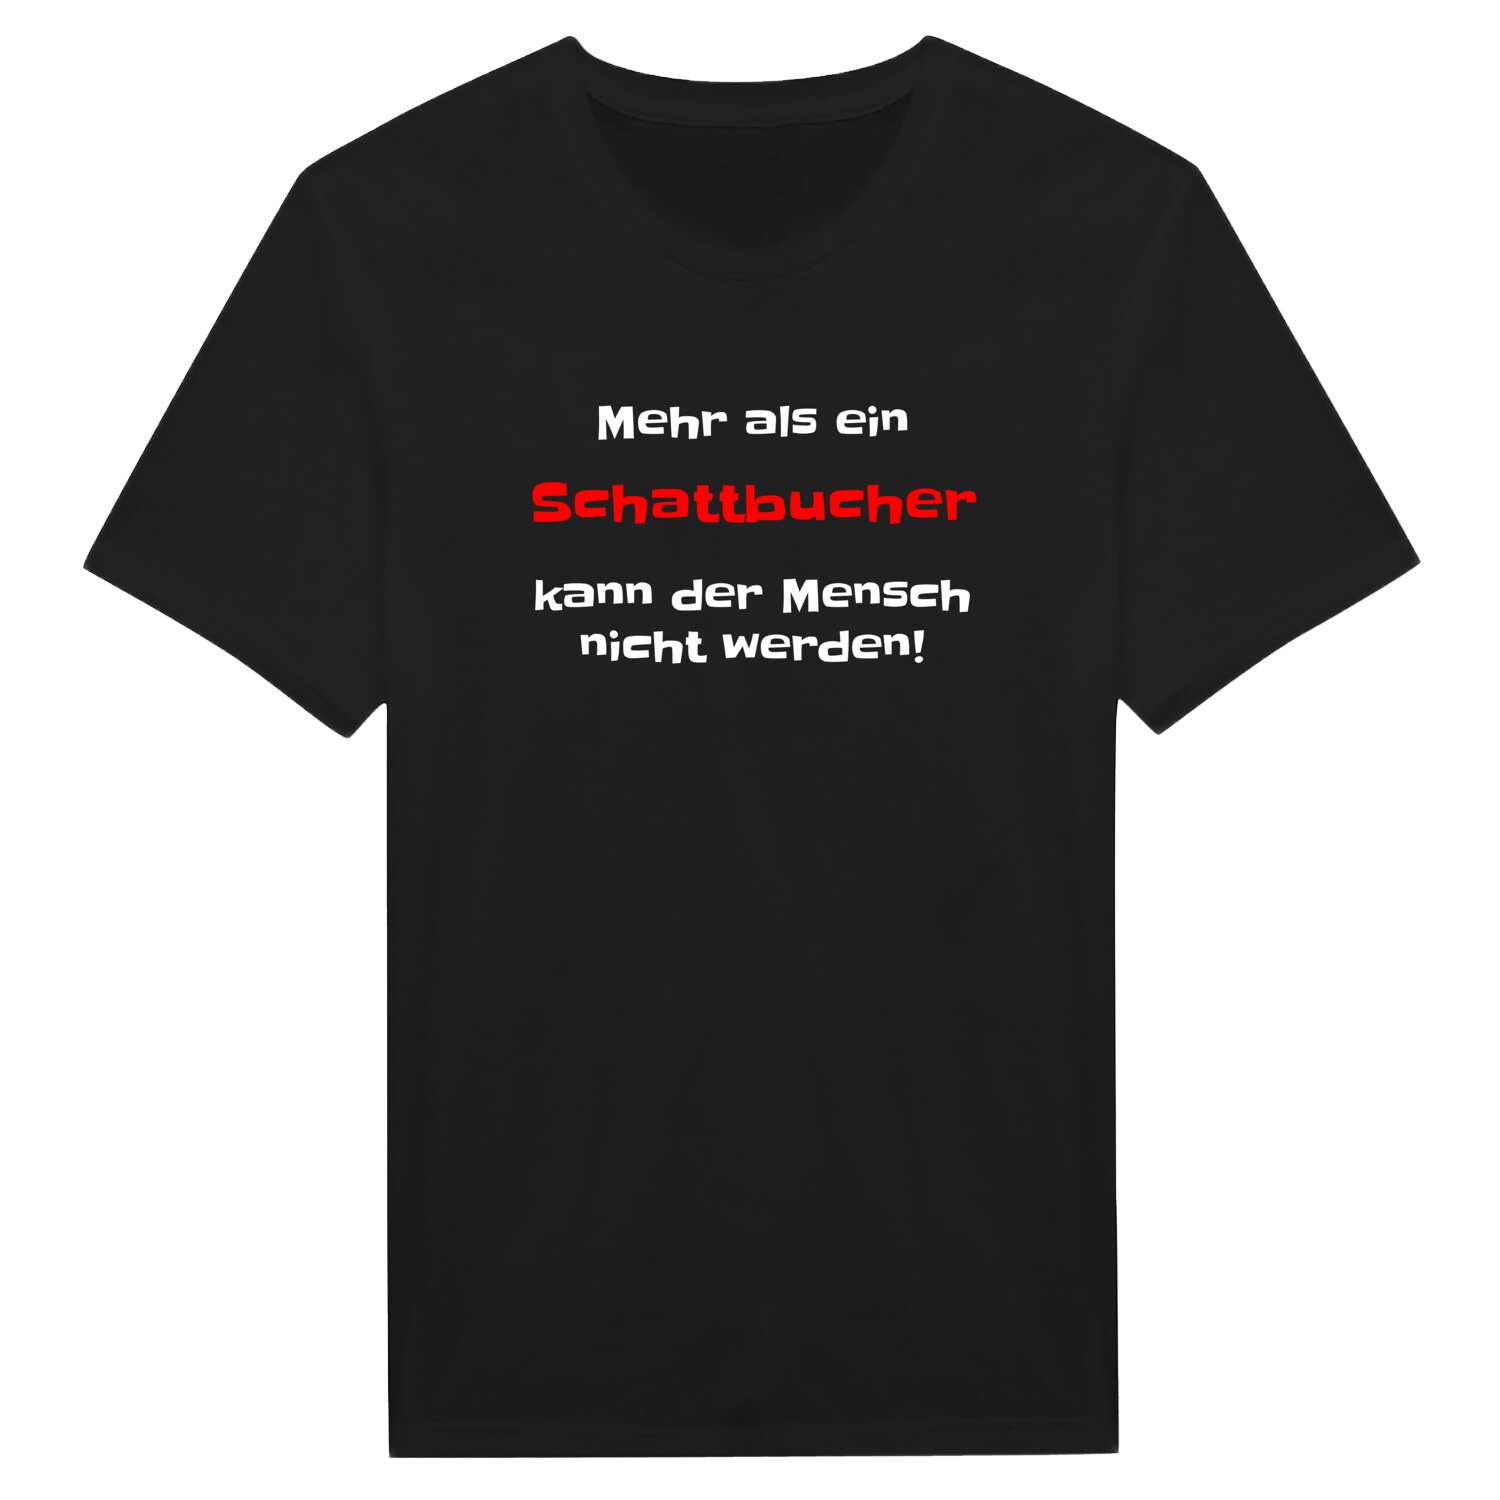 Schattbuch T-Shirt »Mehr als ein«